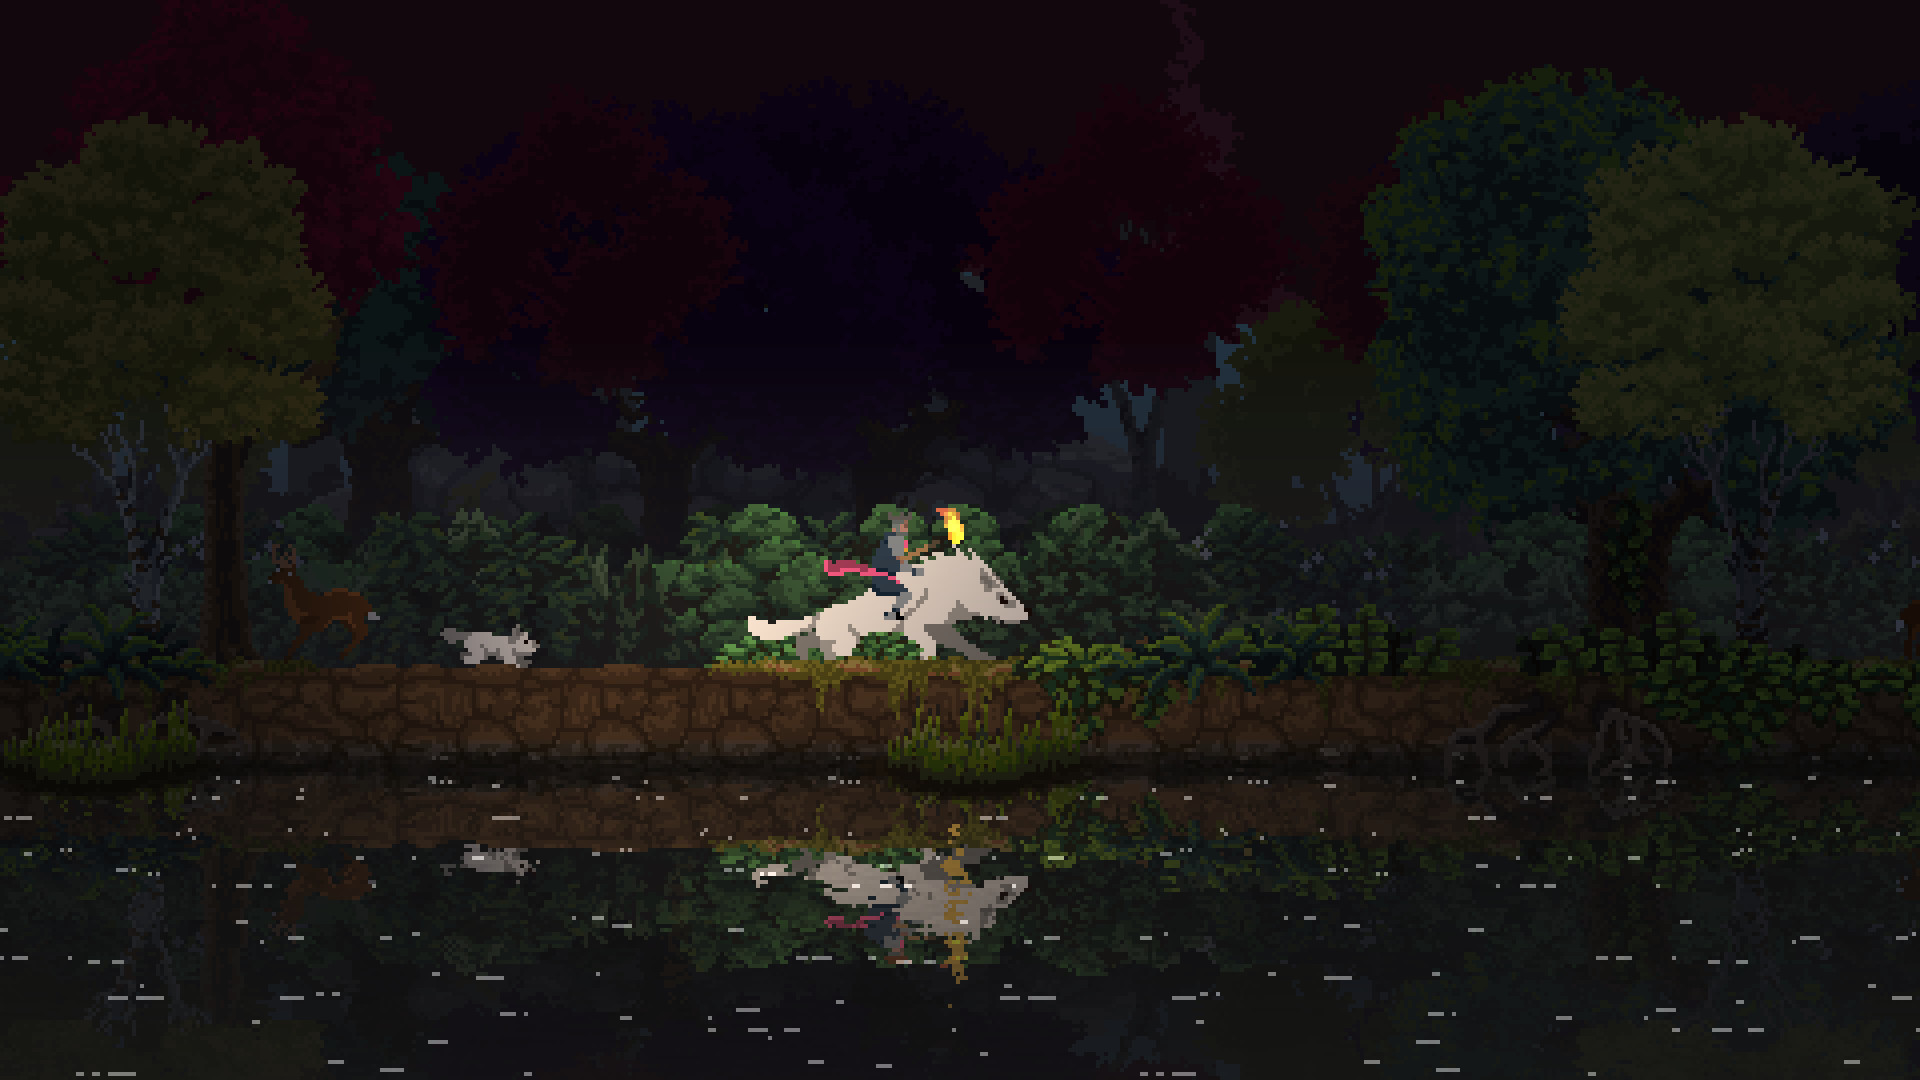 Trò chơi chiến lược di động tốt nhất: Vương quốc hai vương miện. Hình ảnh cho thấy ai đó cưỡi một con sói gần một dòng sông, với một con lợn không xa phía sau, tất cả được thể hiện theo phong cách nghệ thuật pixel